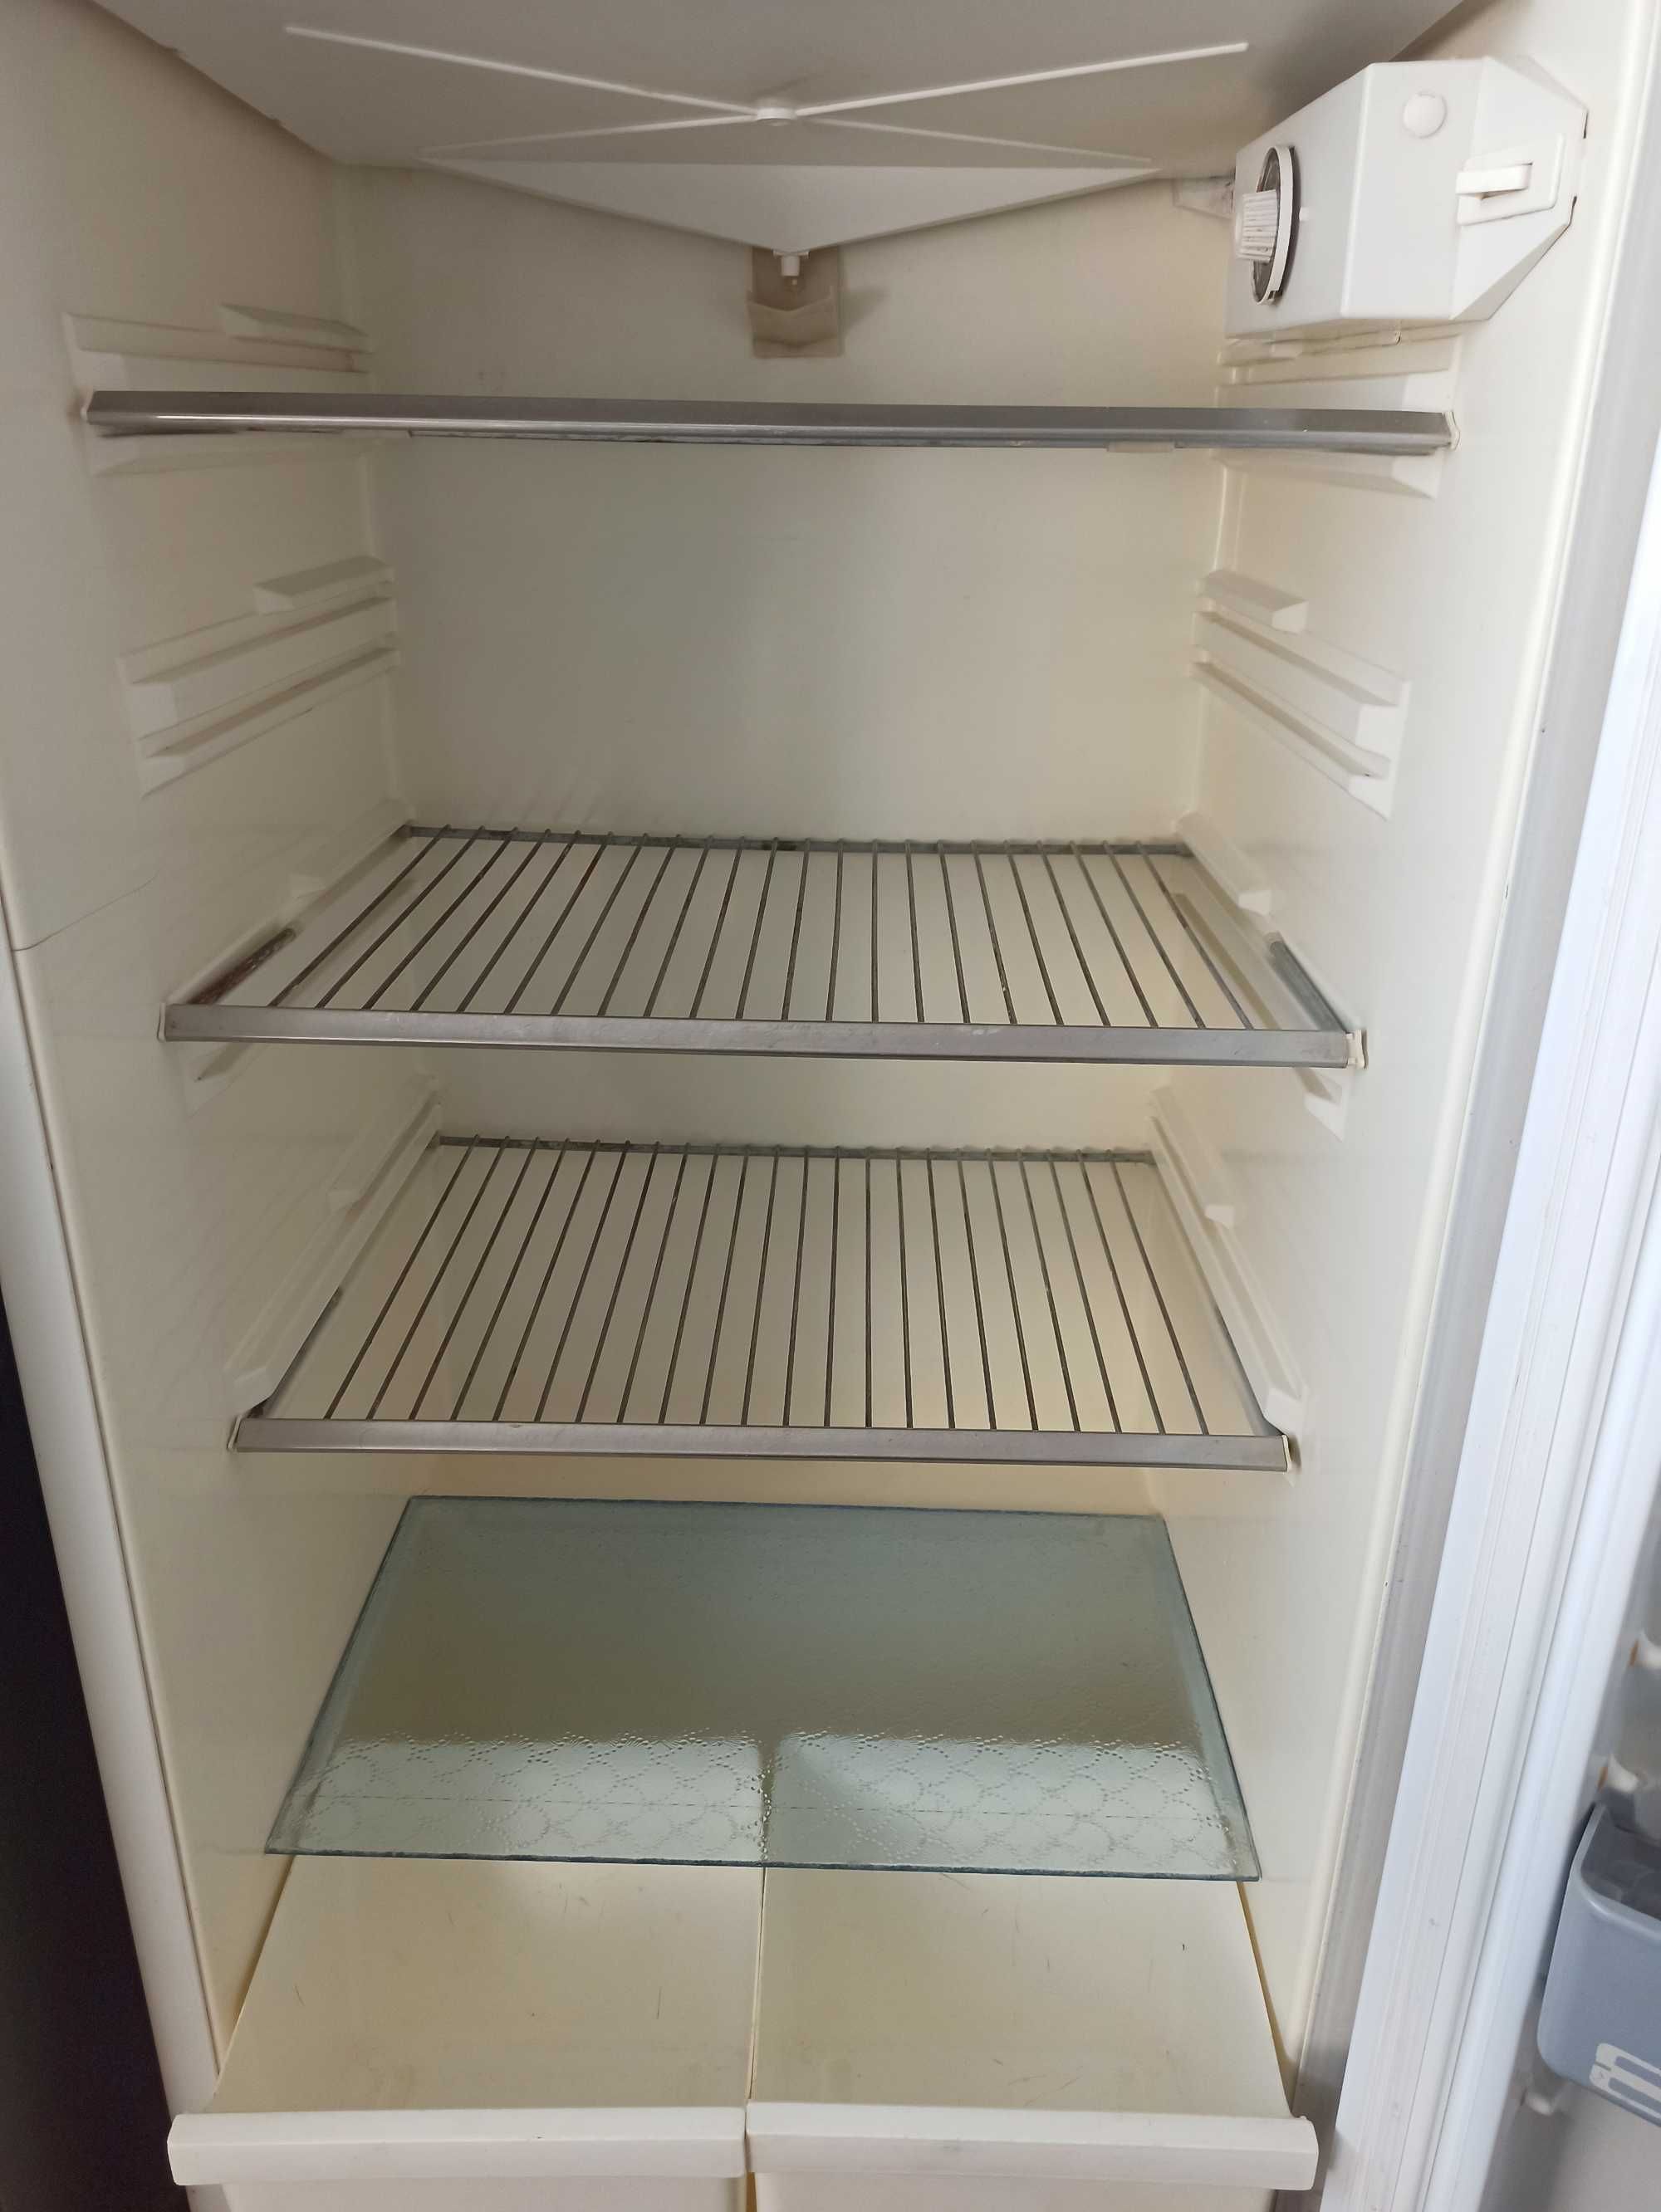 Однокамерный холодильник Минск-16 КШ-280, б/у, 2500, торг.